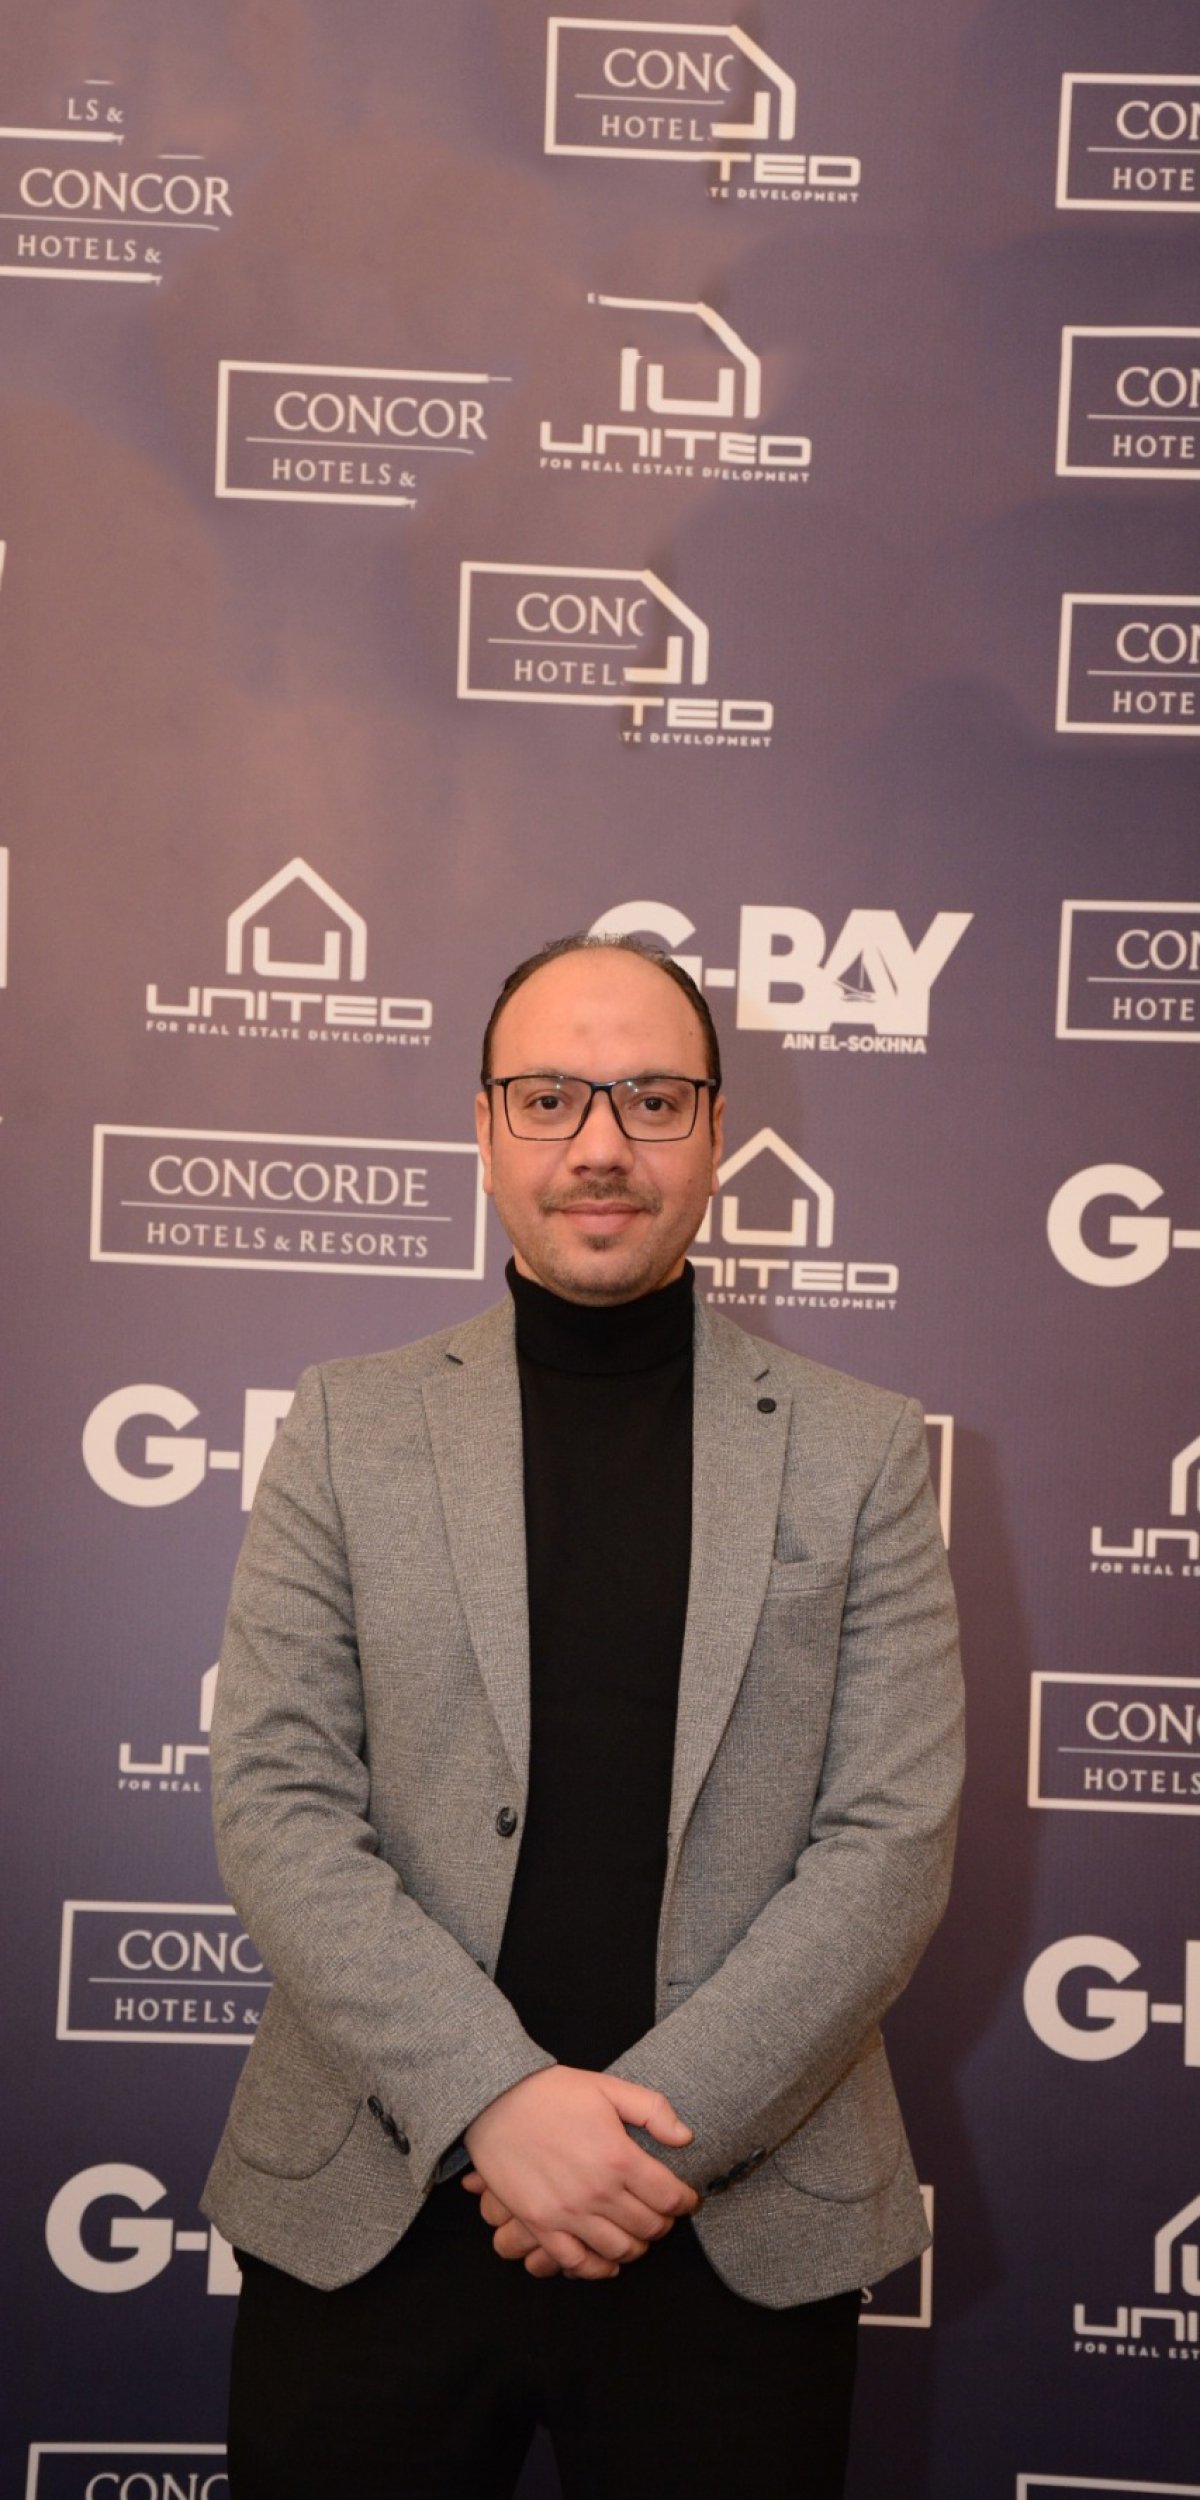 أحمد حمزة: الإدارة الفندقية المتميزة لمشروع «G-BAY» يجذب شريحة جديدة من العملاء للمشروع